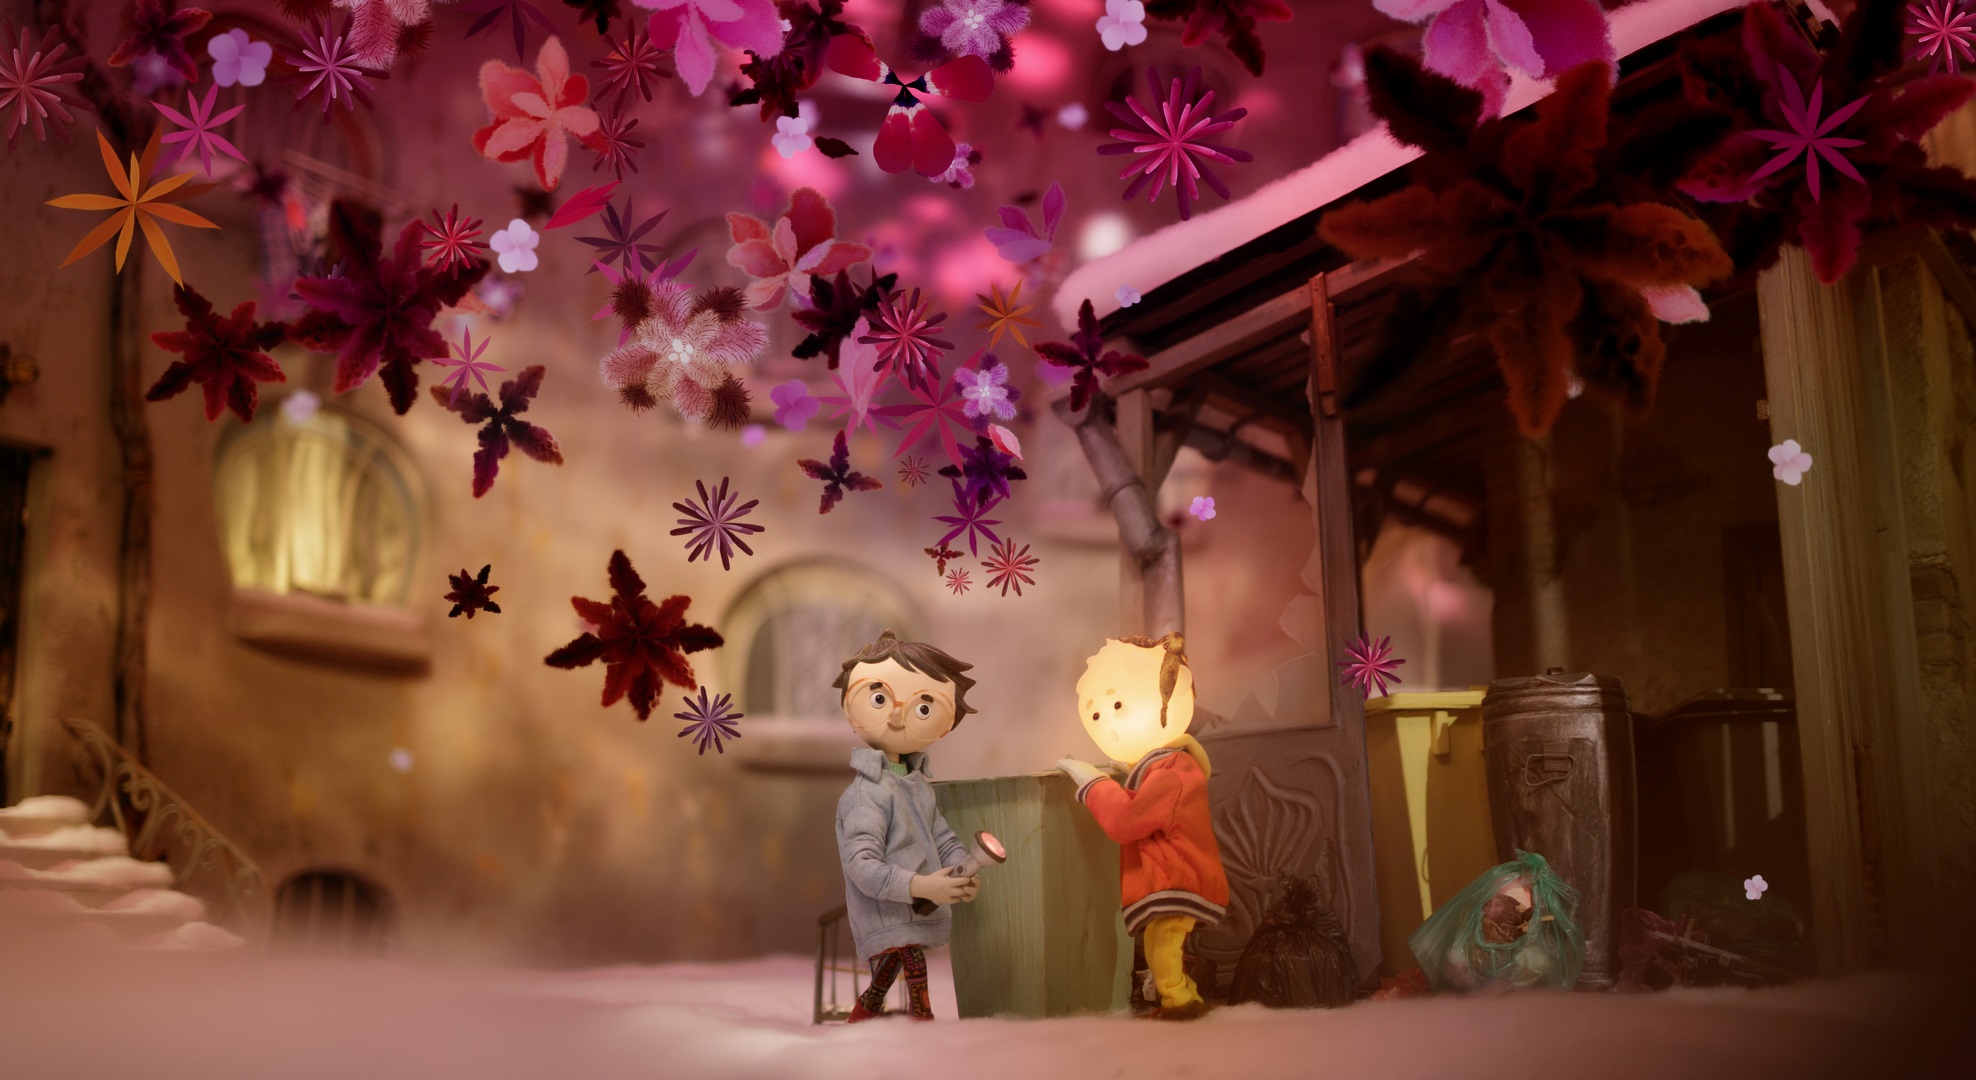 Vychádza trailer k novej slovenskej rozprávke Tonko, Slávka ako aj i kúzelné svetlo